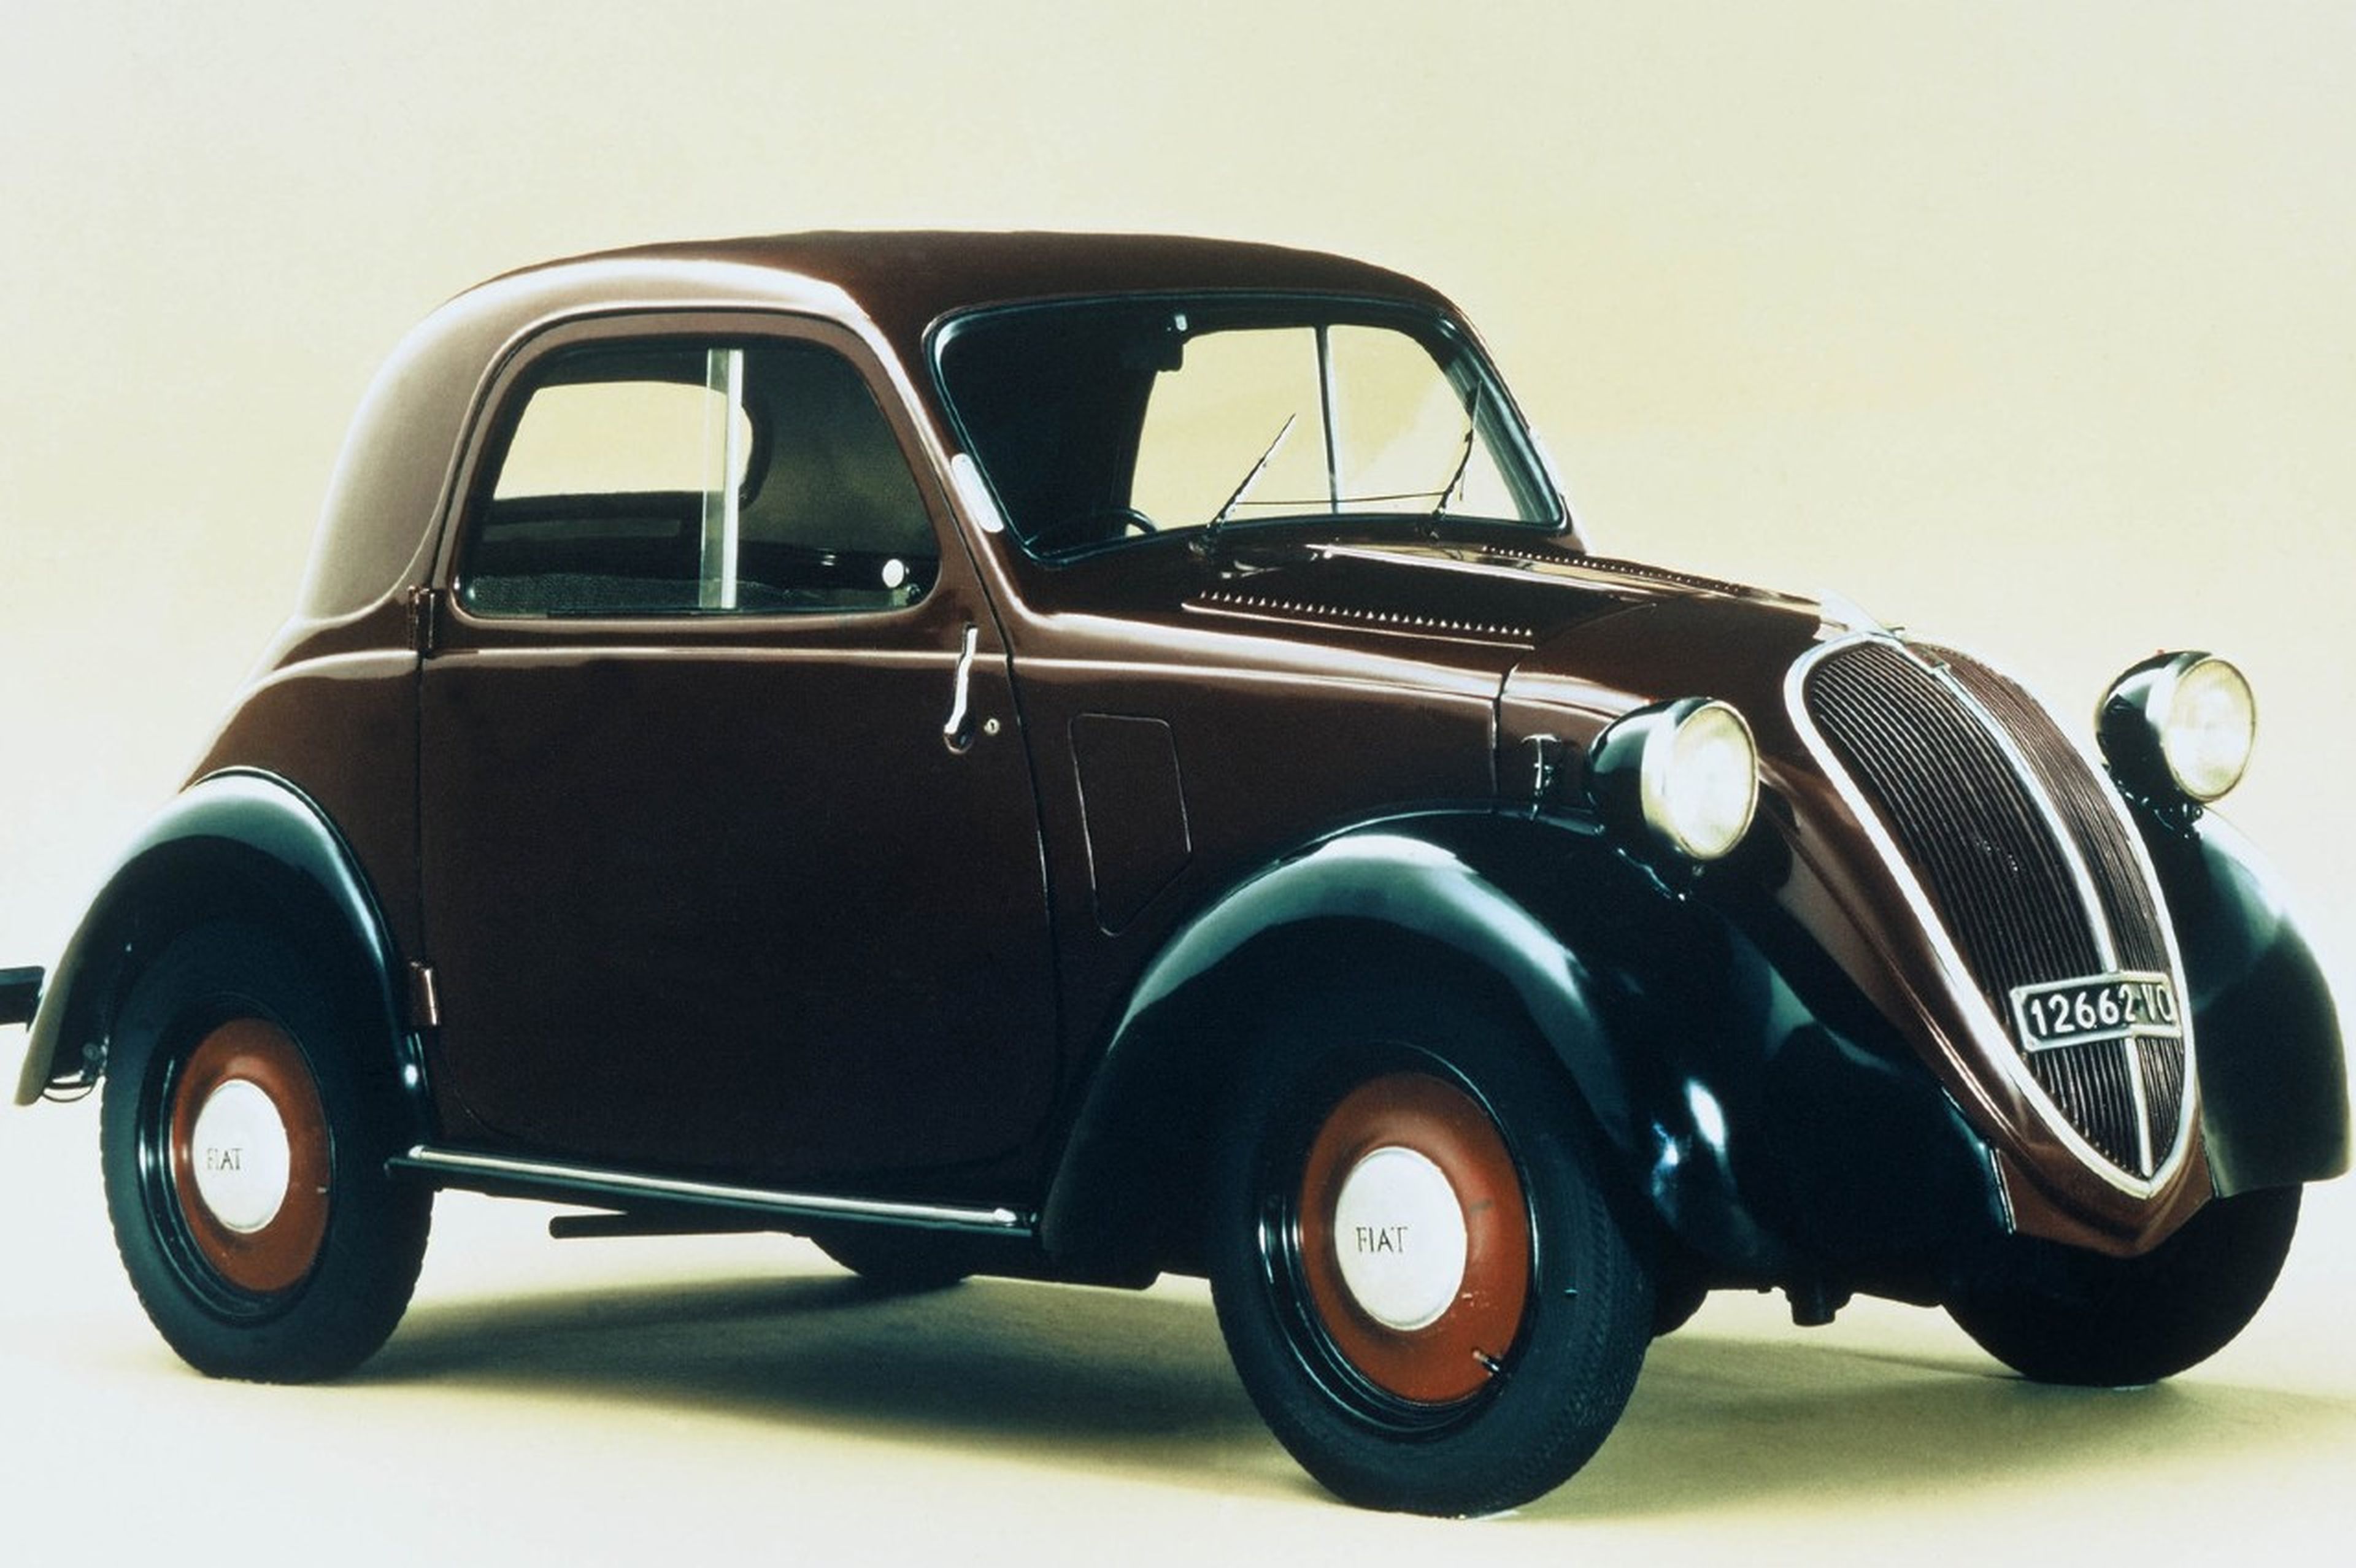 El Fiat Topolino fue el primer coche popular en el periodo de entreguerras